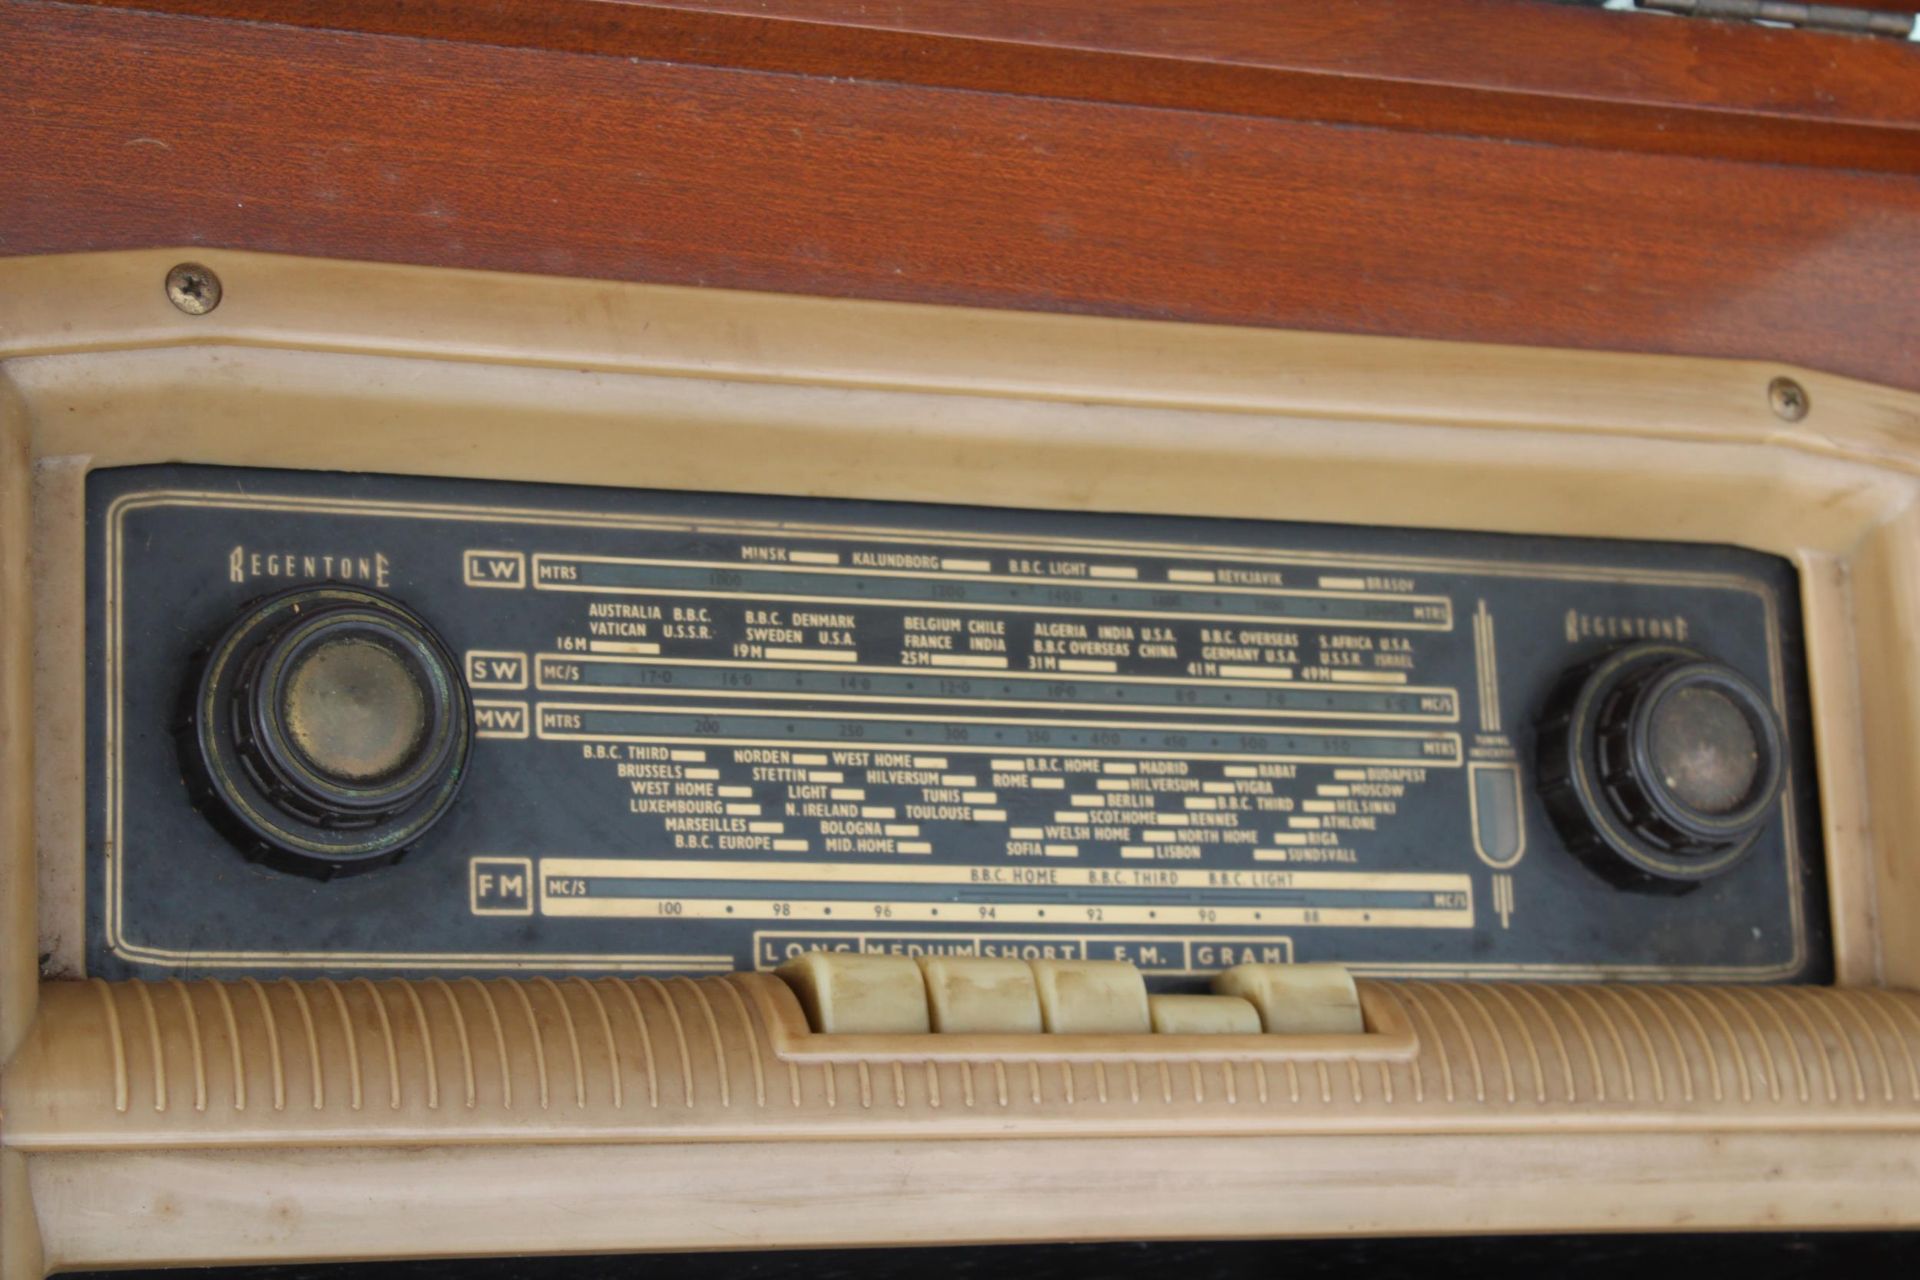 A VINTAGE MID CENTURY REGENTONE RADIOGRAM WITH A GARRARD DECK - Image 4 of 6